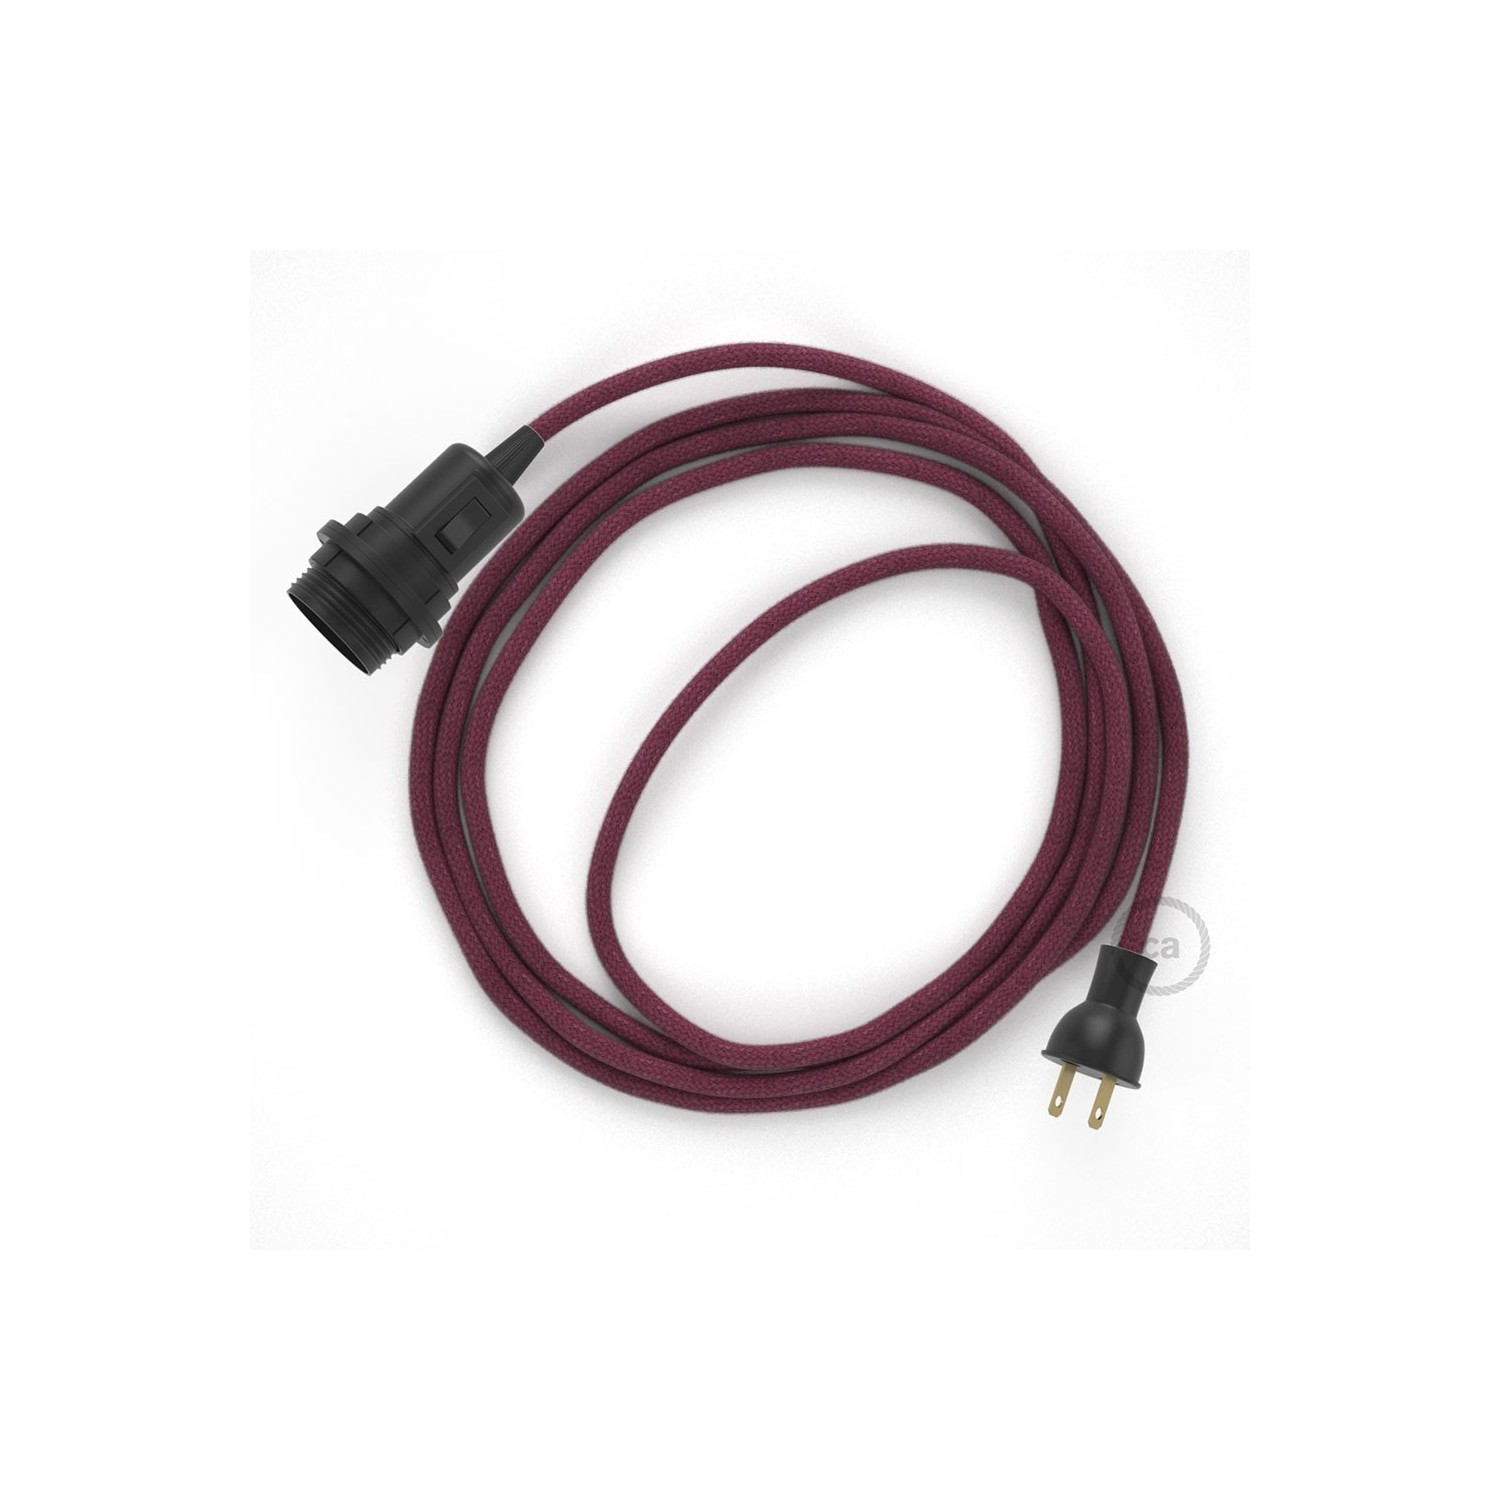 Crea tu Snake para pantalla con cable de Algodón Rojo Violeta RC32, socket y enchufe, y trae la luz donde tu quieras.